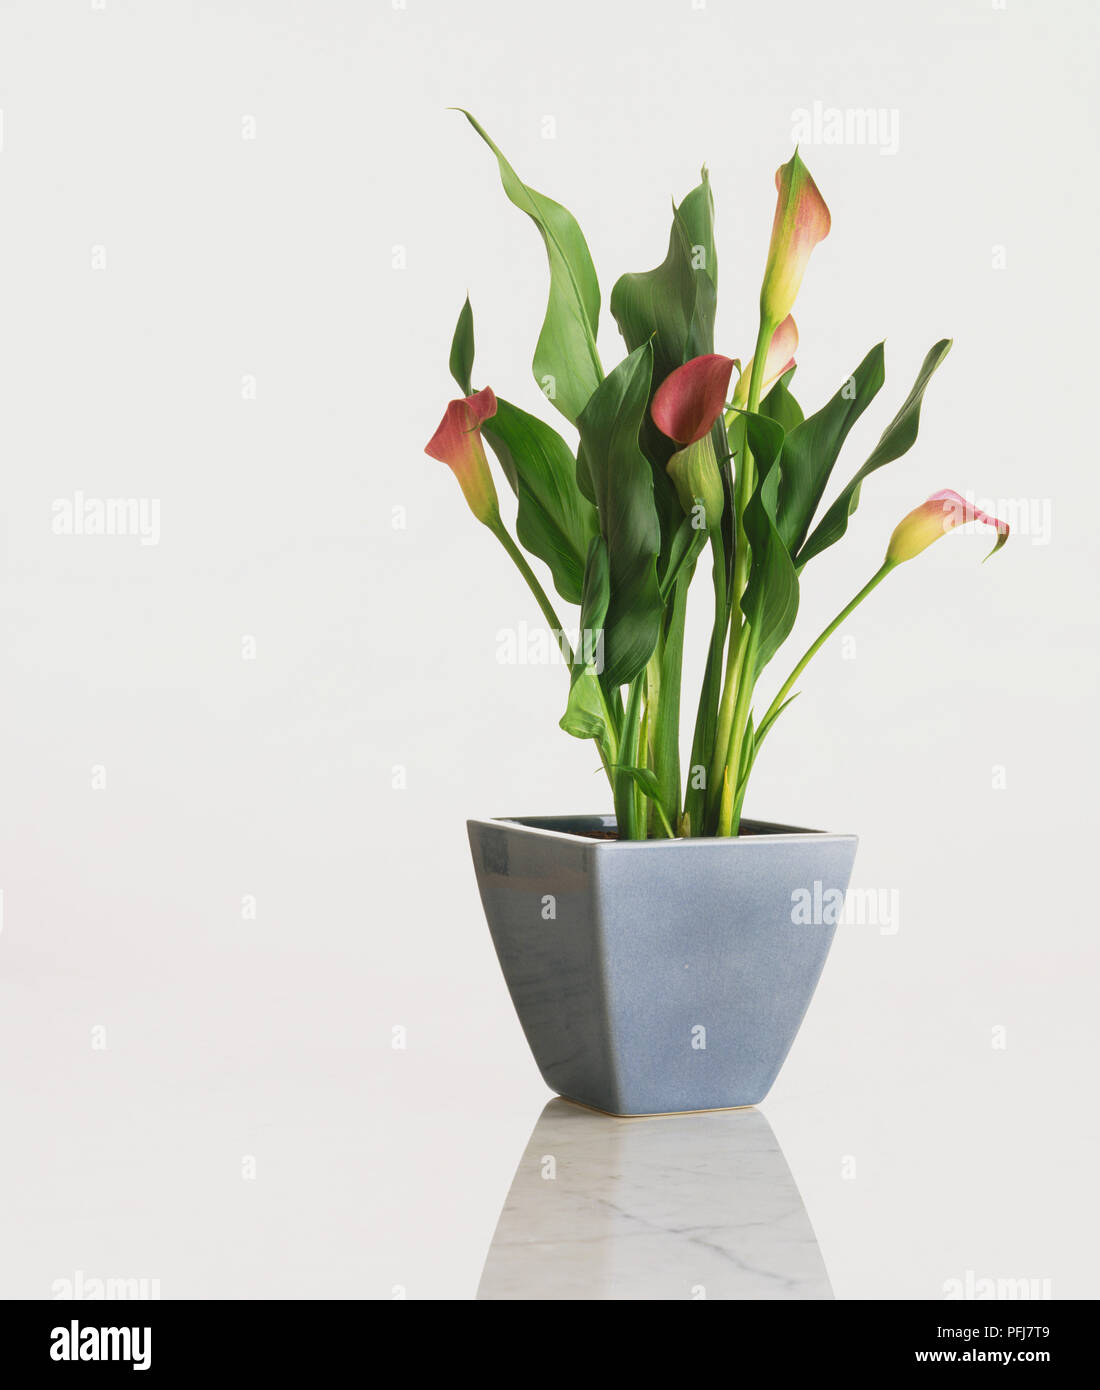 Arum Lily (Zantedeschia), con pianta a forma di tromba, rosso fiori di colore giallo e verde chiaro i gambi e lunga, curling, foglie di colore verde scuro, in pentola blu Foto Stock